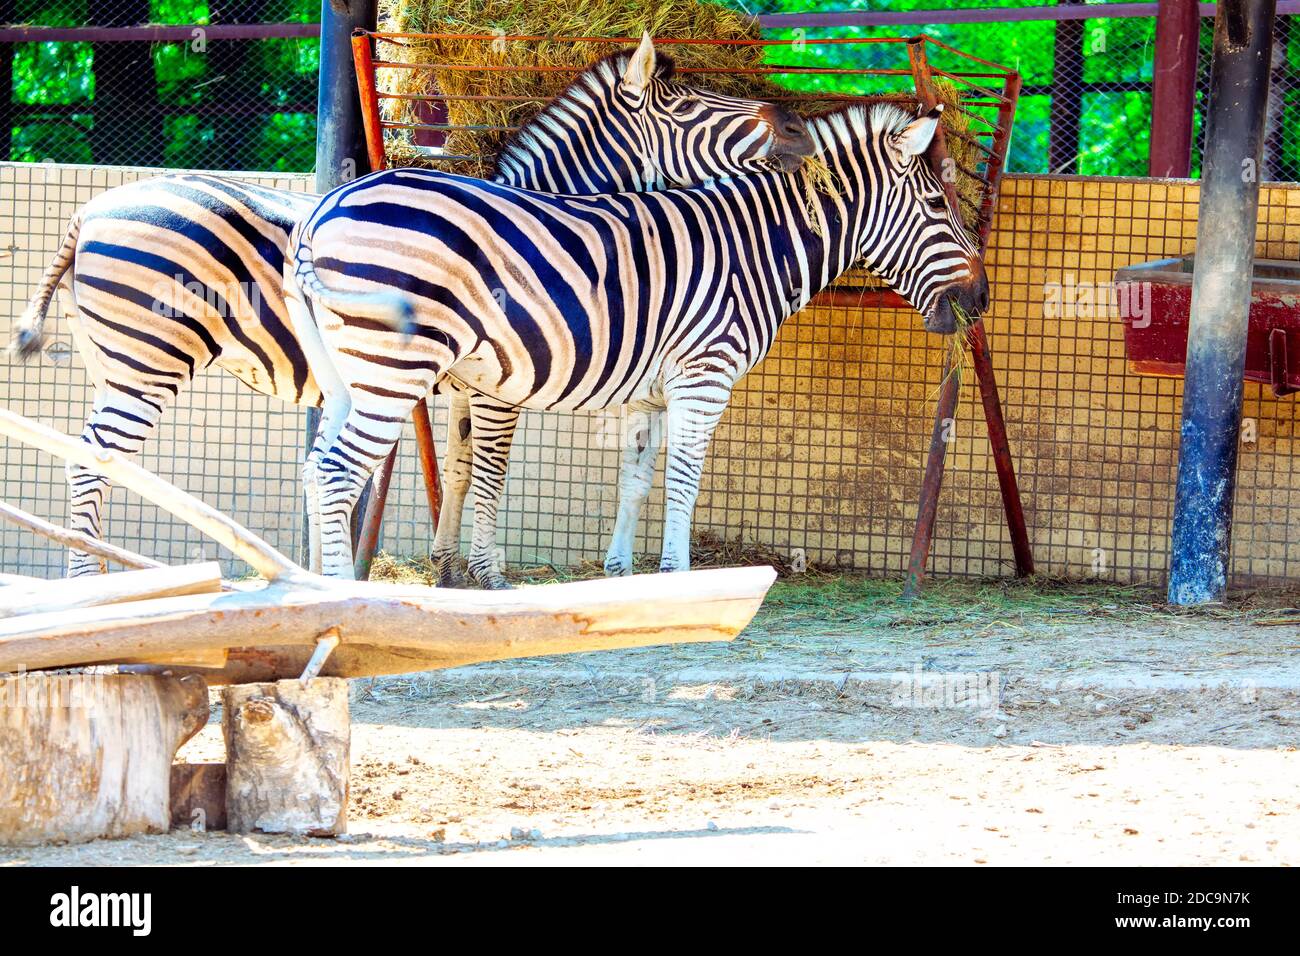 African zebra farm . Feeding zebras in the zoo Stock Photo - Alamy